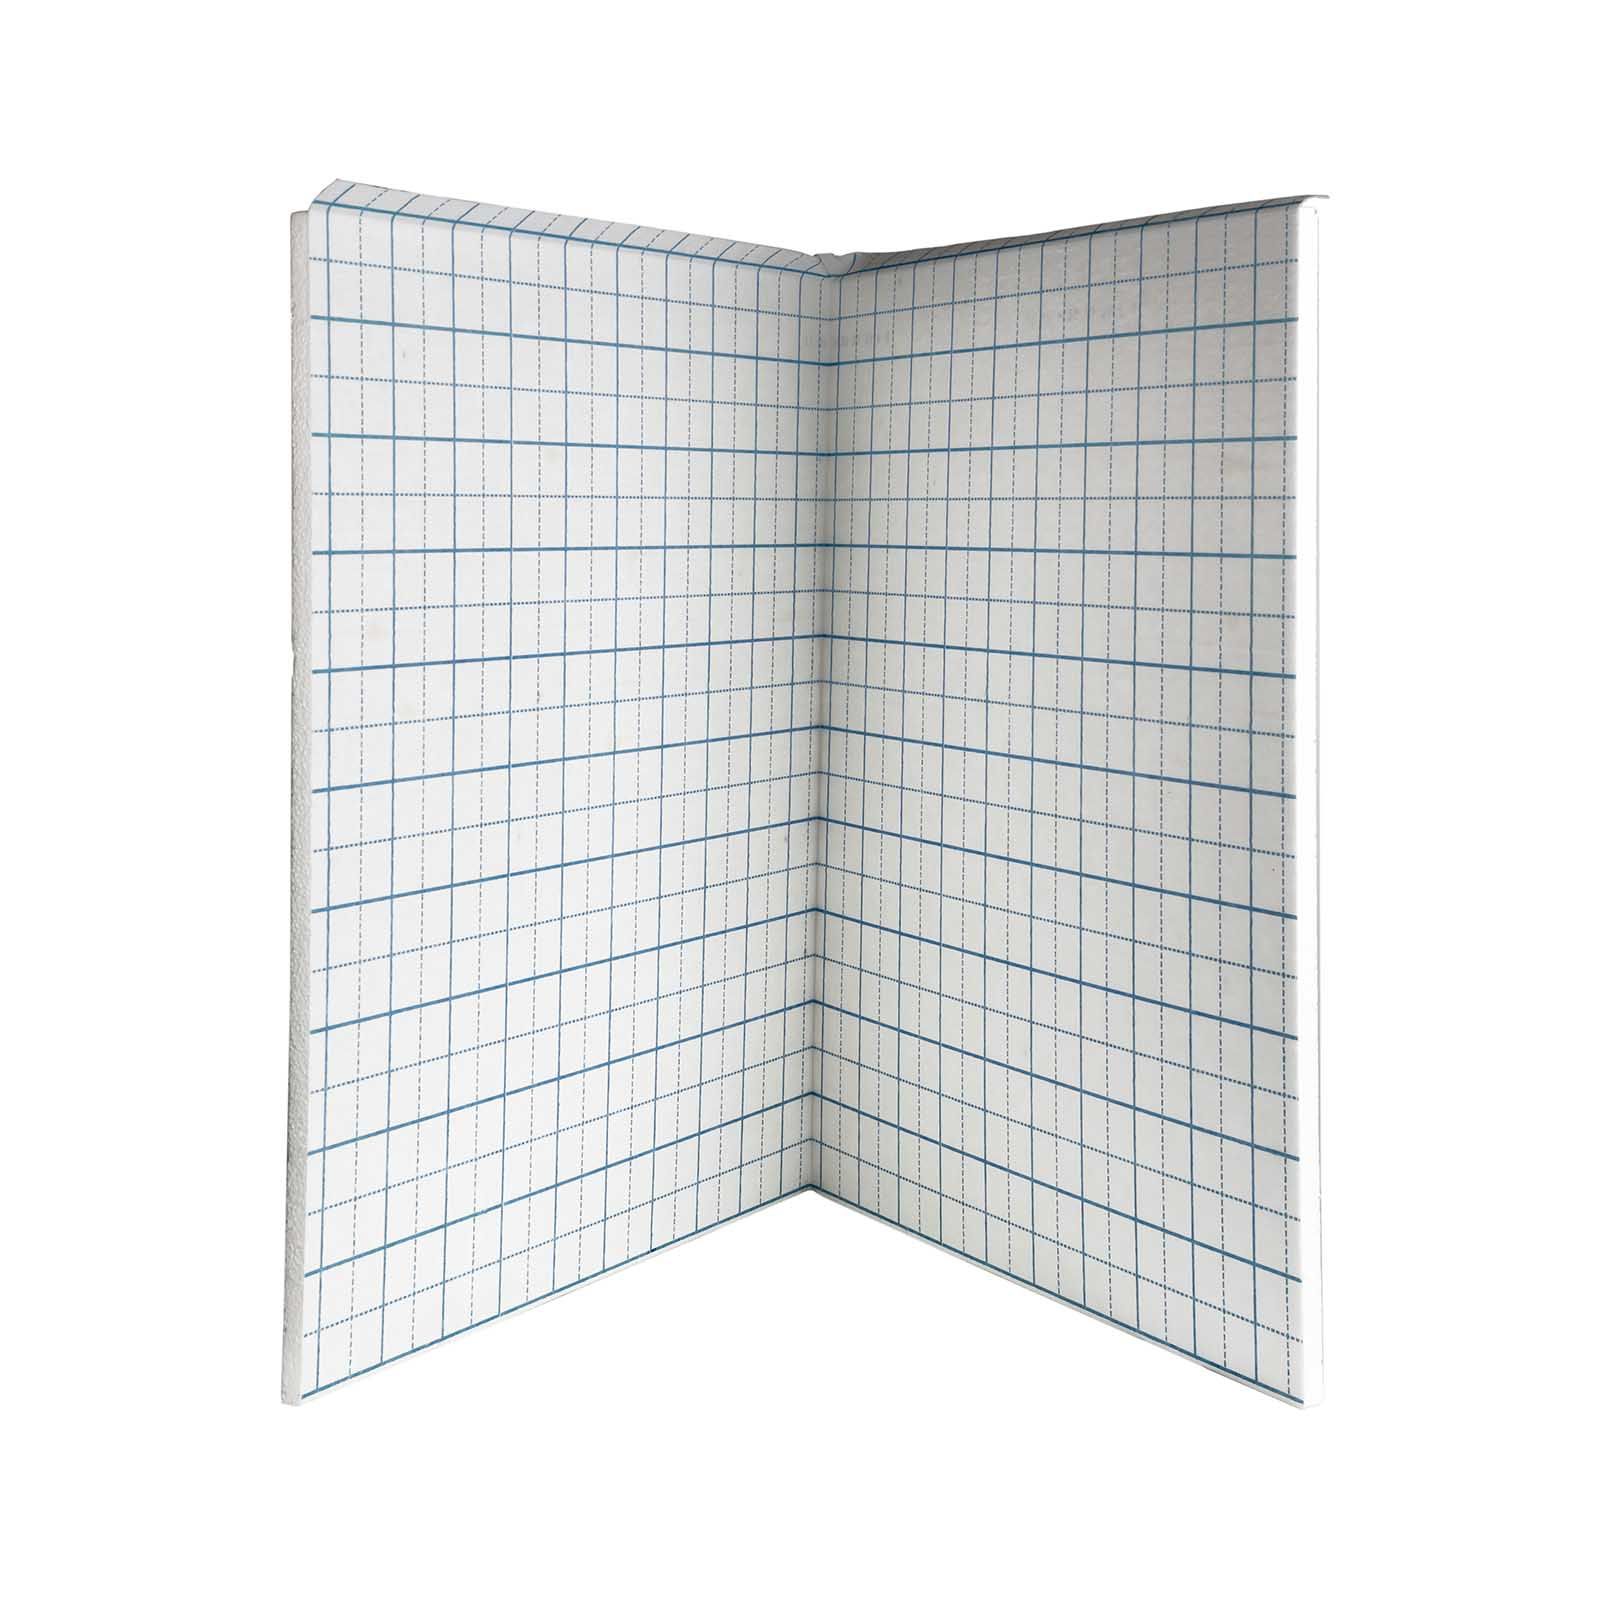 20 mm Klettplatte Faltplatte 20-2 WLG 040 10 m² Fußbodenheizung Klettsystem